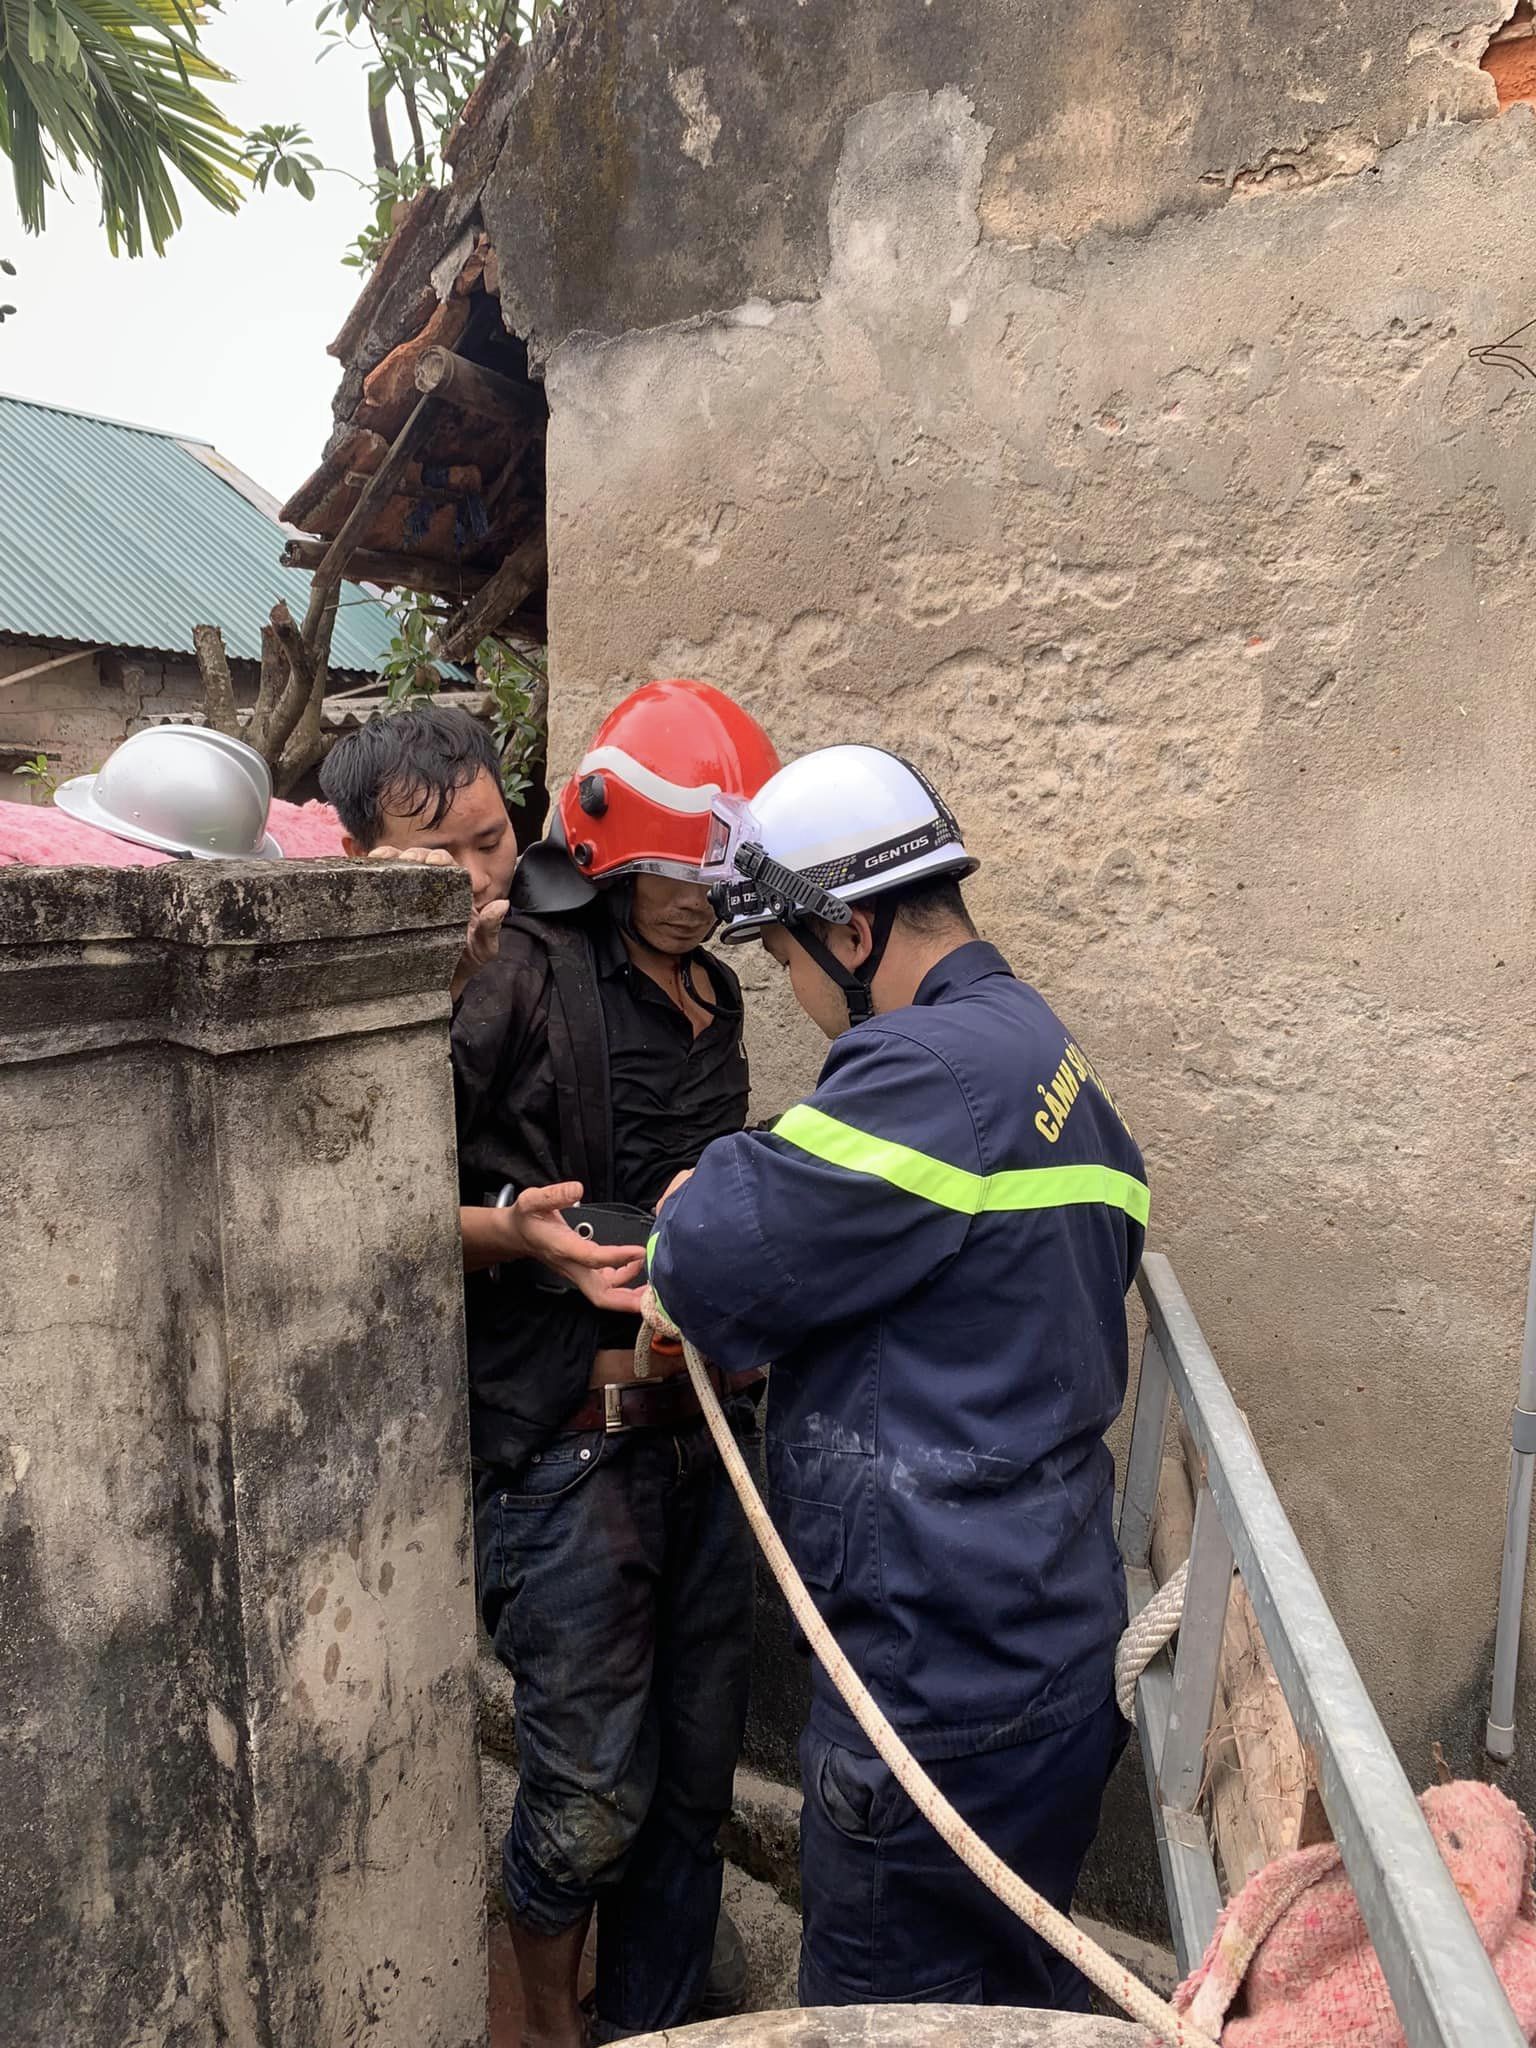 Ngã xuống giếng sâu 25 mét, người đàn ông ở Hà Nội được cảnh sát cứu kịp thời - Ảnh 2.